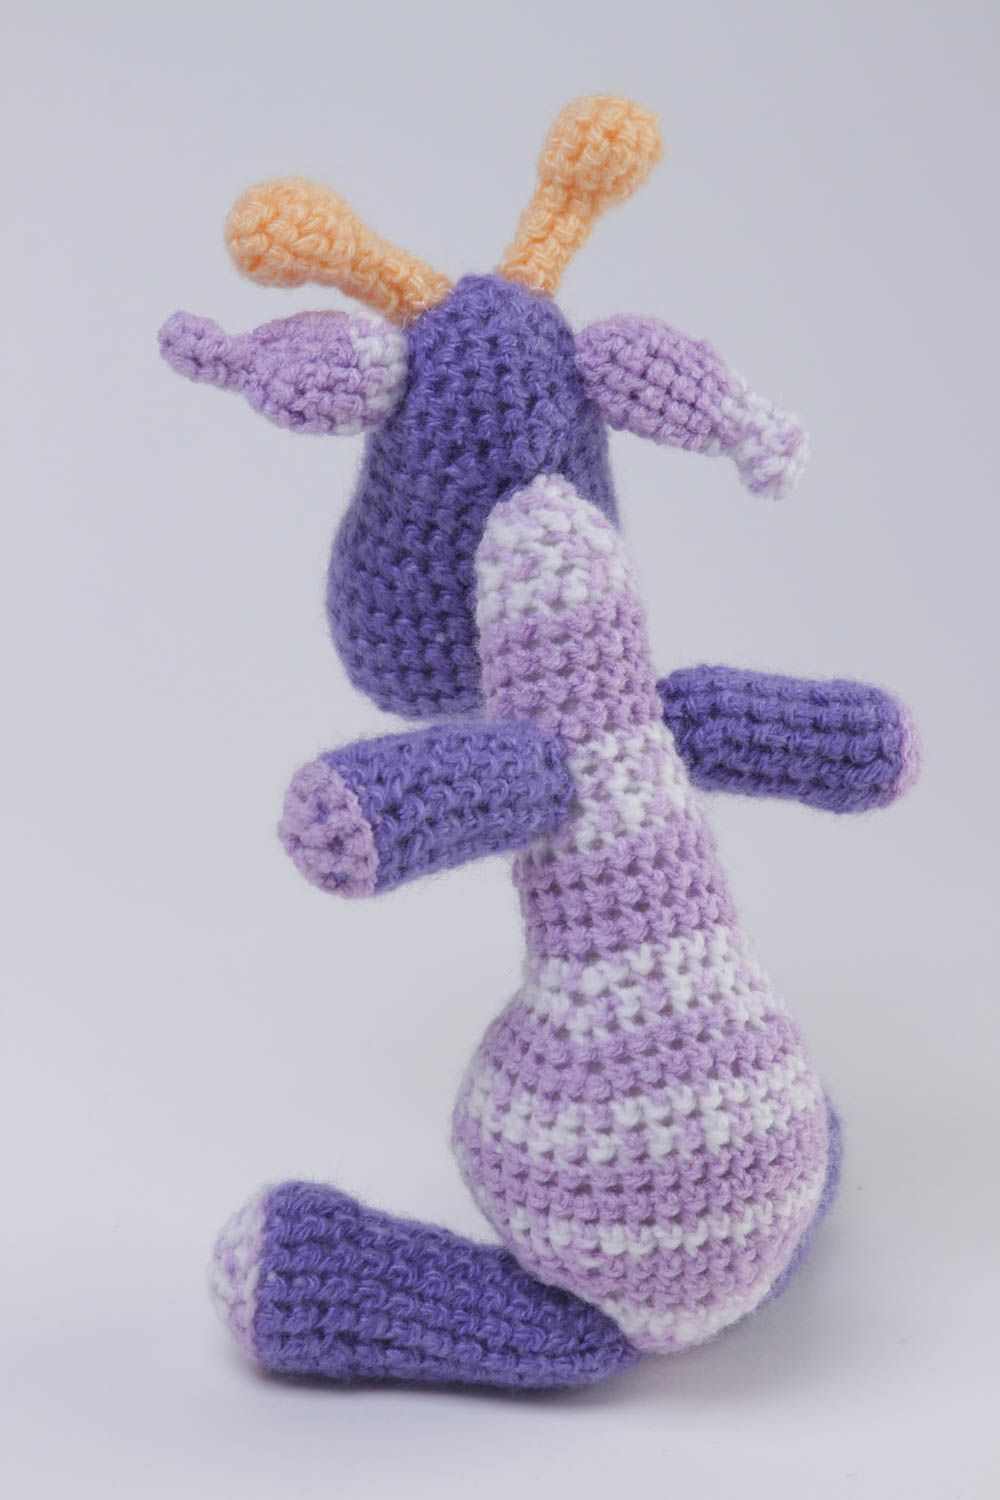 Funny handmade soft toy crochet toy childrens toys birthday gift ideas photo 4